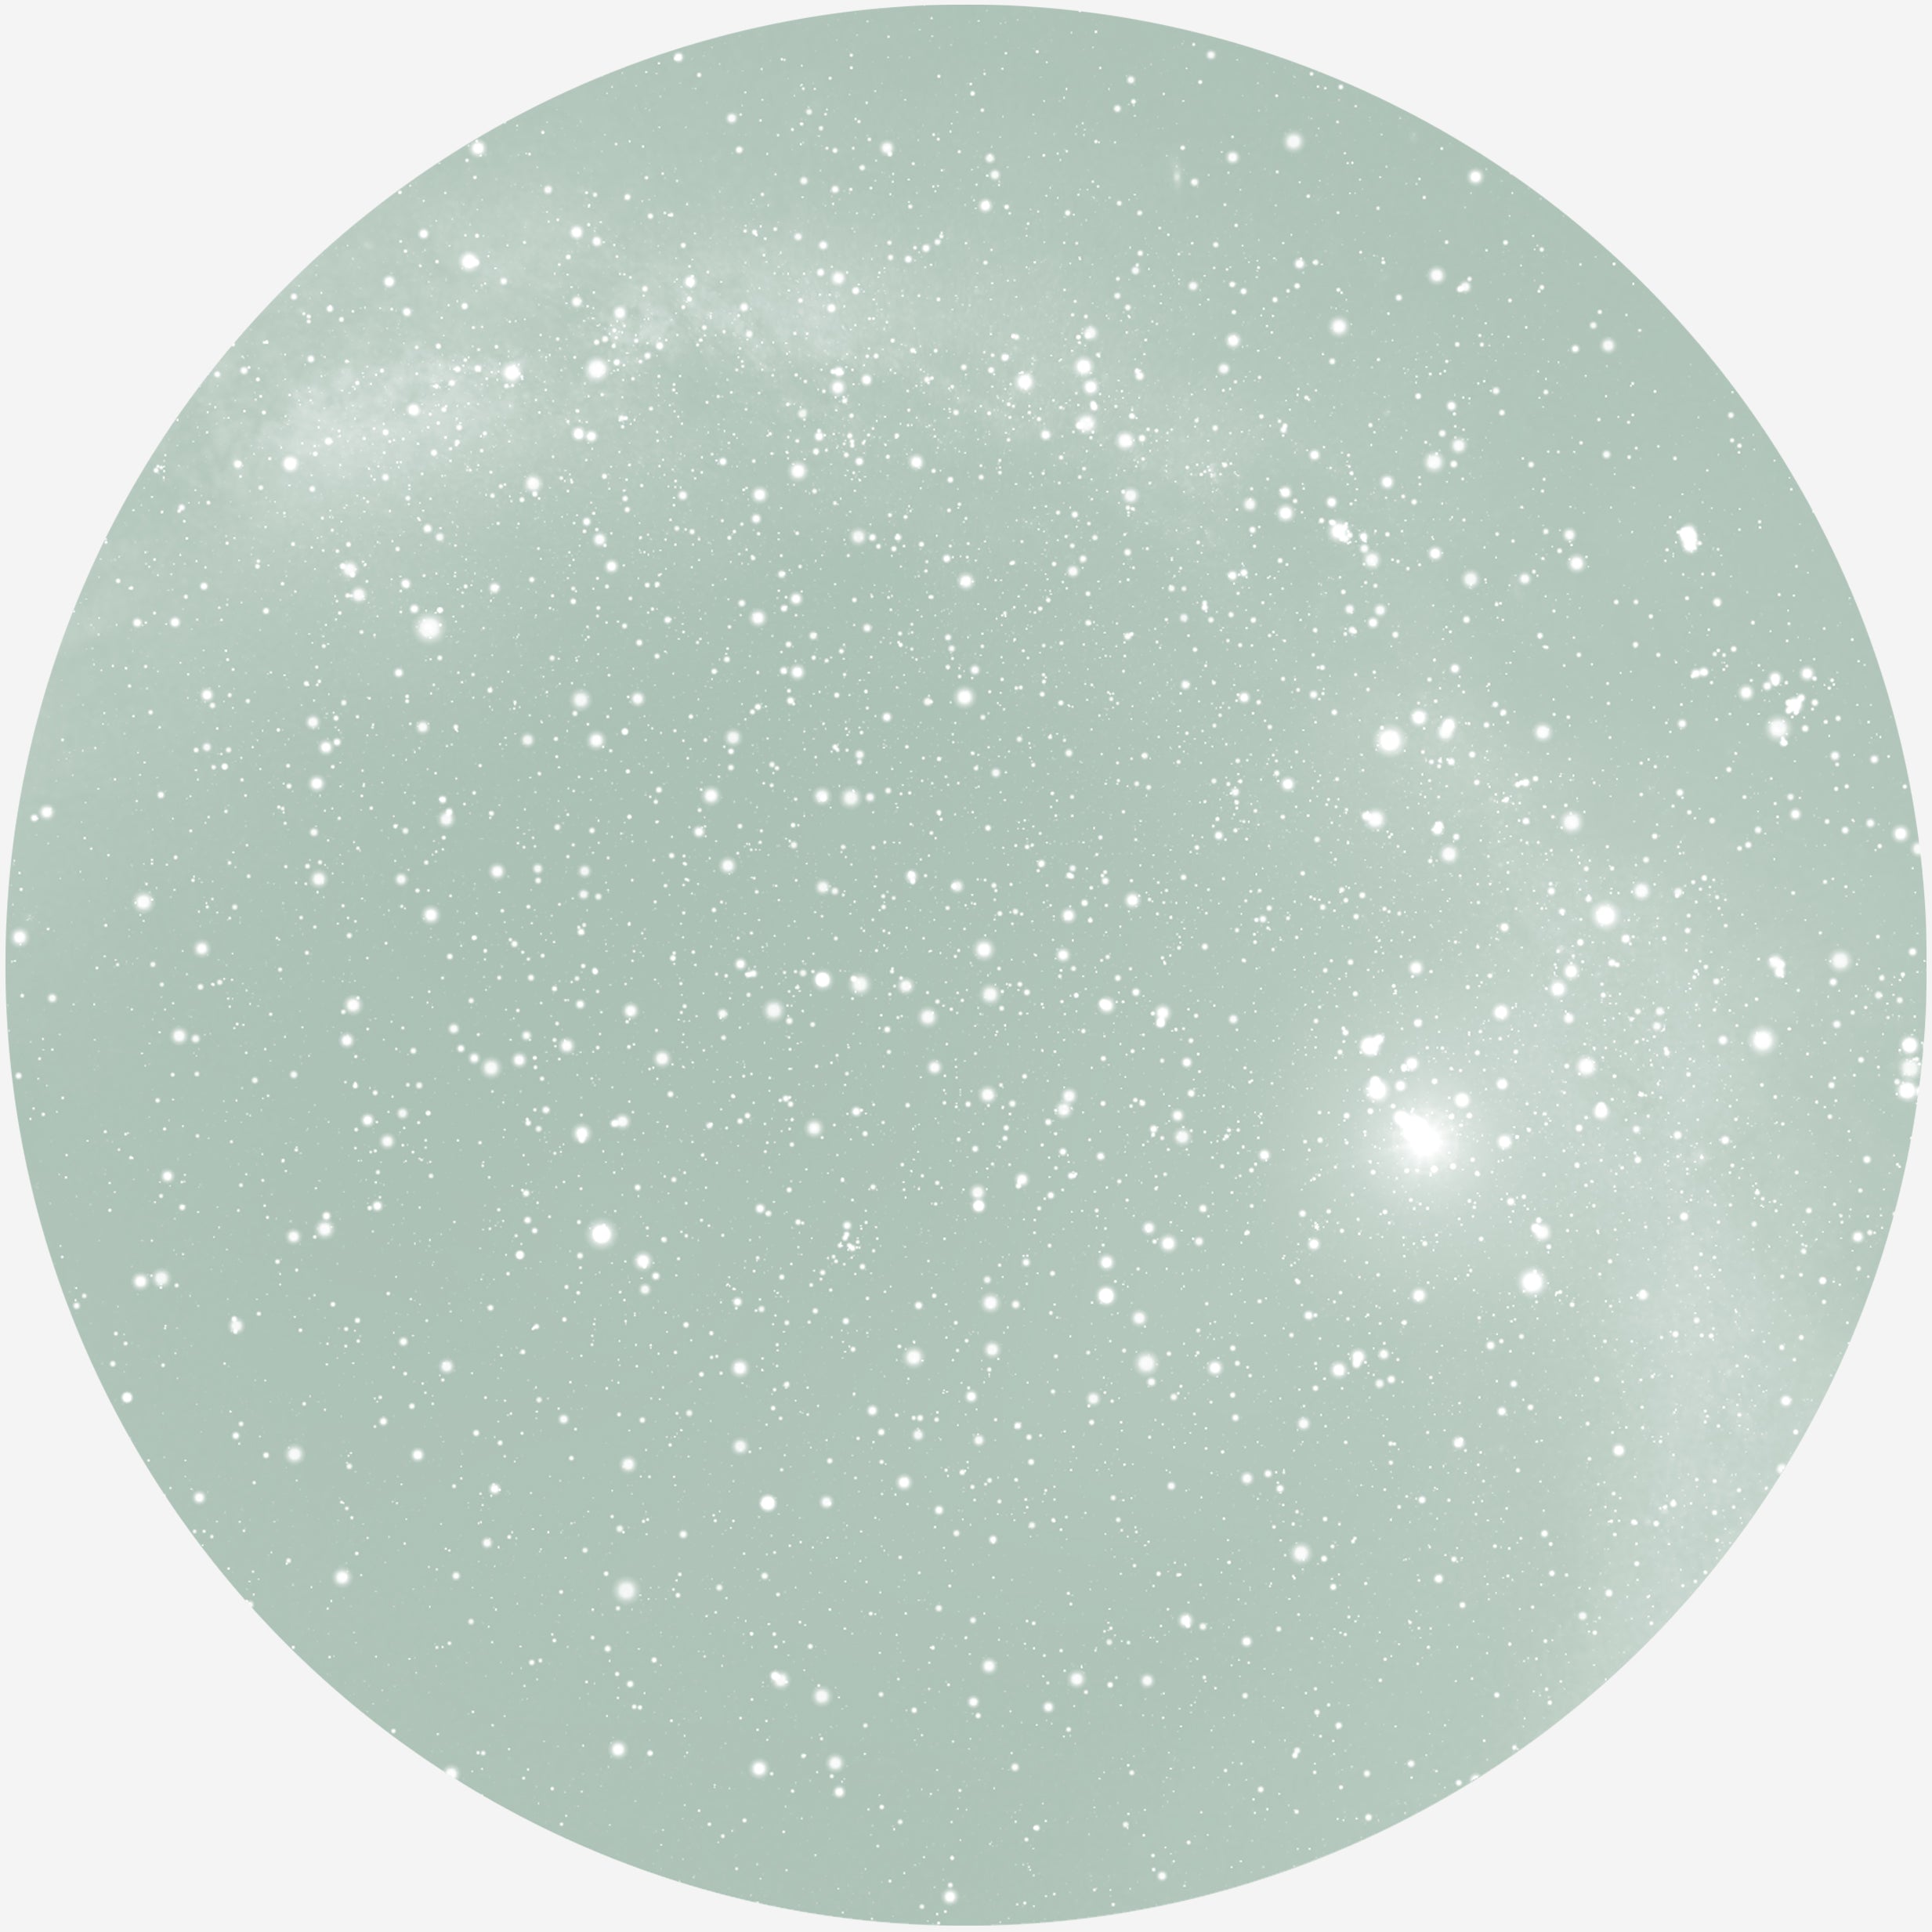 Se RUND PLAKAT MED PERSONLIG STJERNEHIMMEL (LYSEGRØN) - 20 cm / Stjernehimmel med mælkevejen hos KISPUS